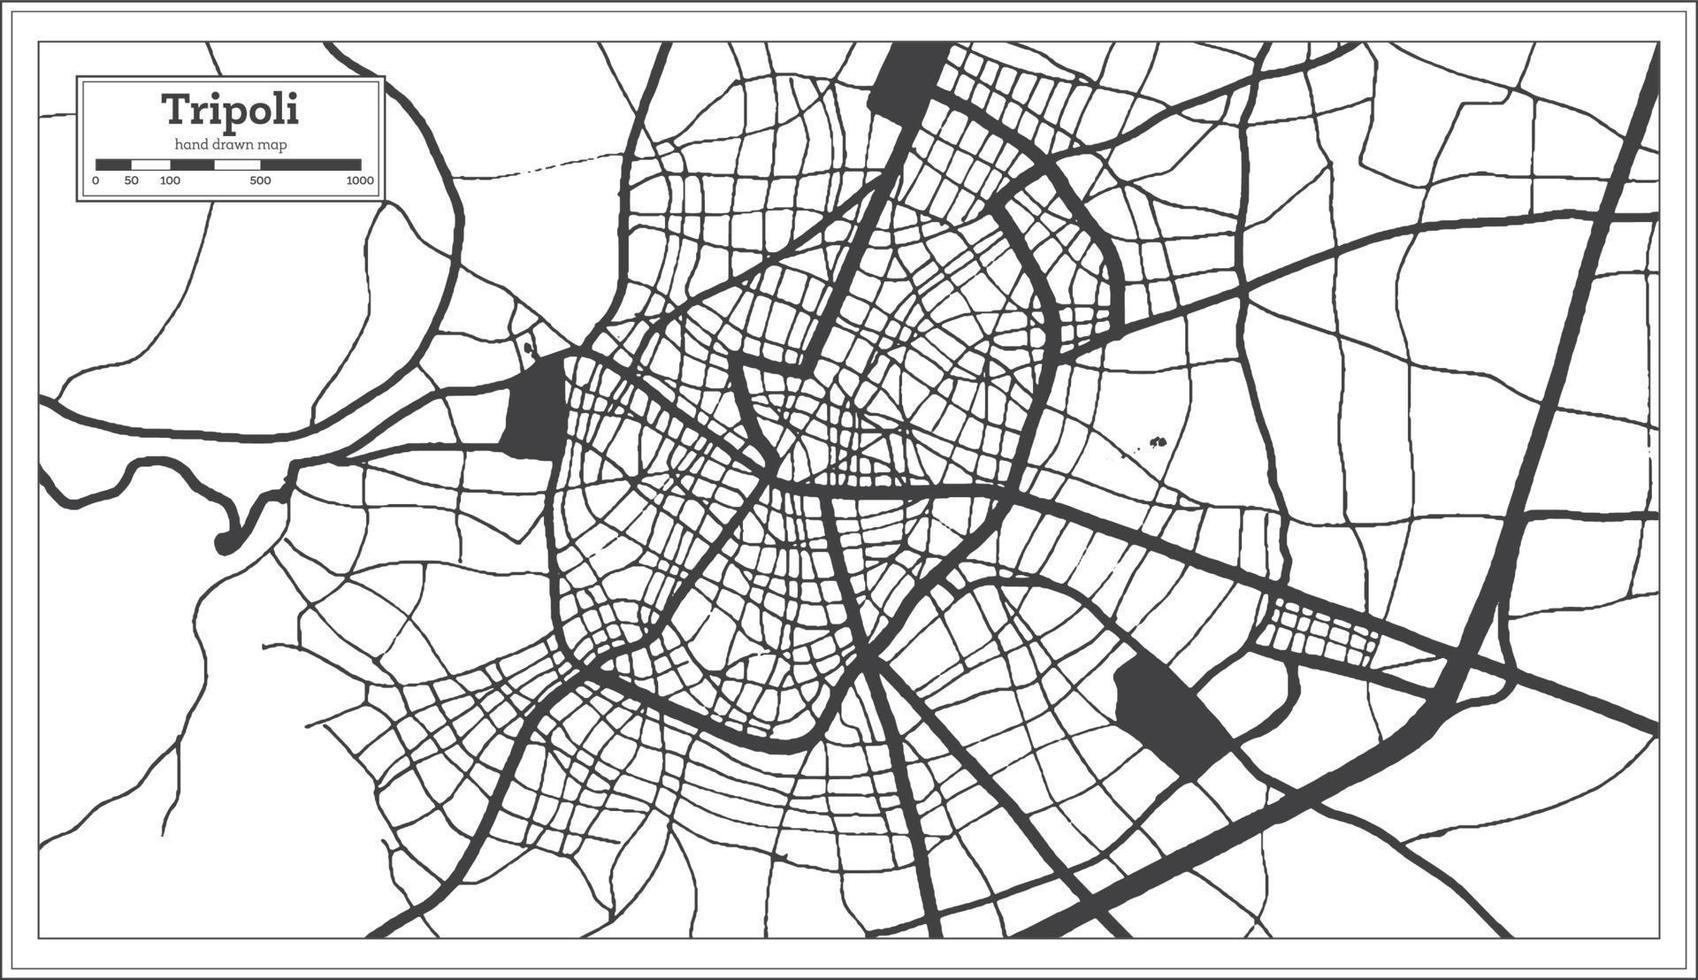 tripoli grekland stad Karta i svart och vit Färg i retro stil. översikt Karta. vektor